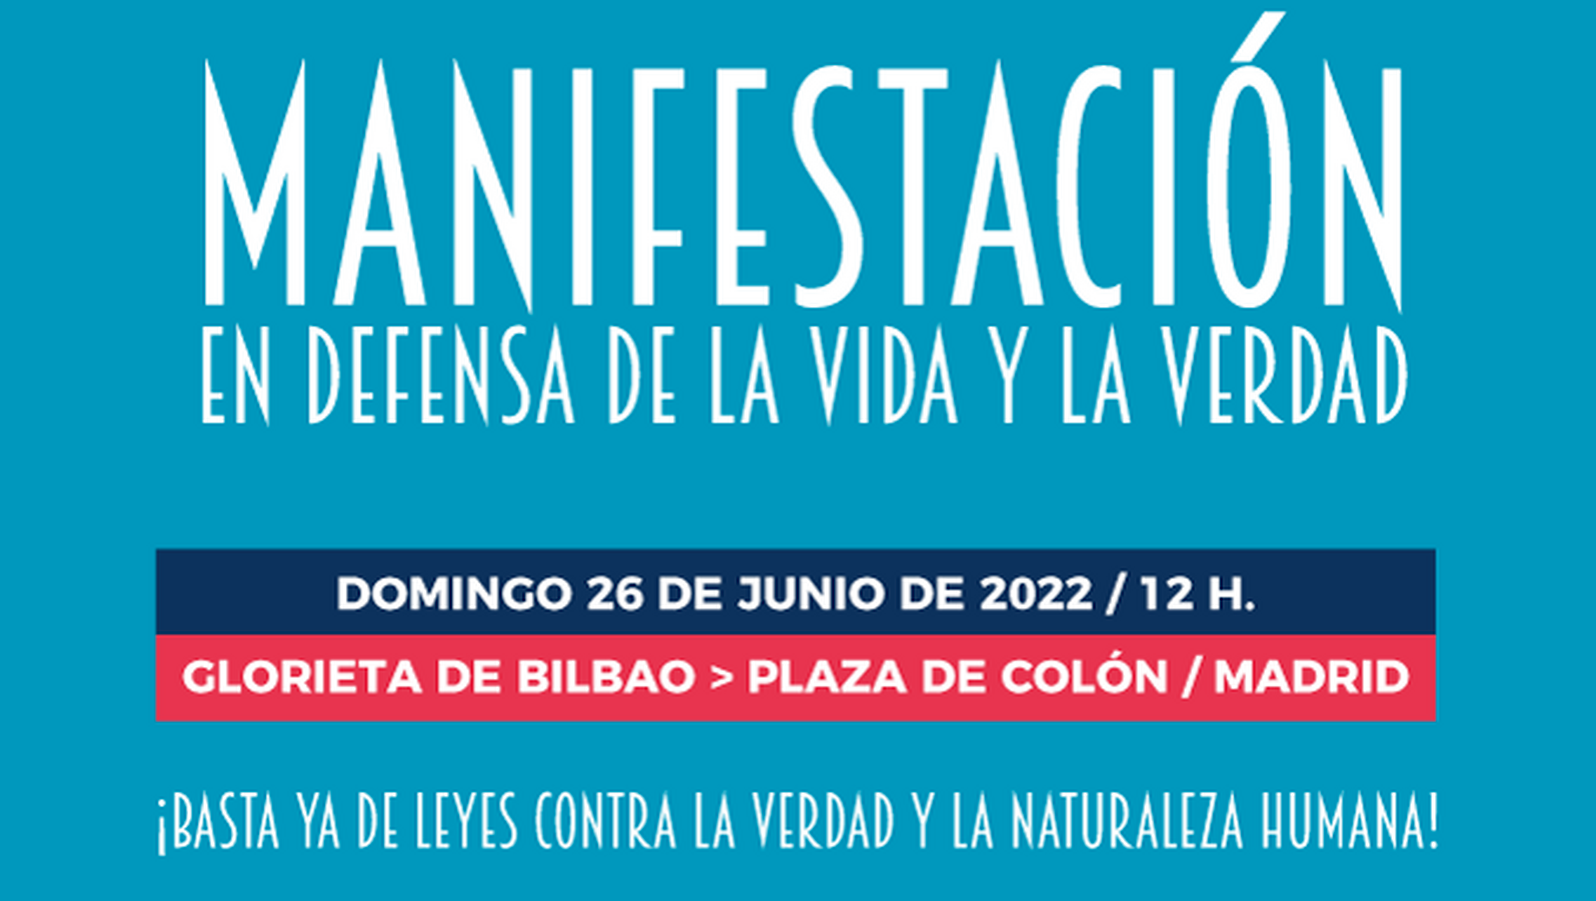 Más de 200 organizaciones de la sociedad civil se manifestarán el día 26 en Madrid en defensa de la vida y la verdad